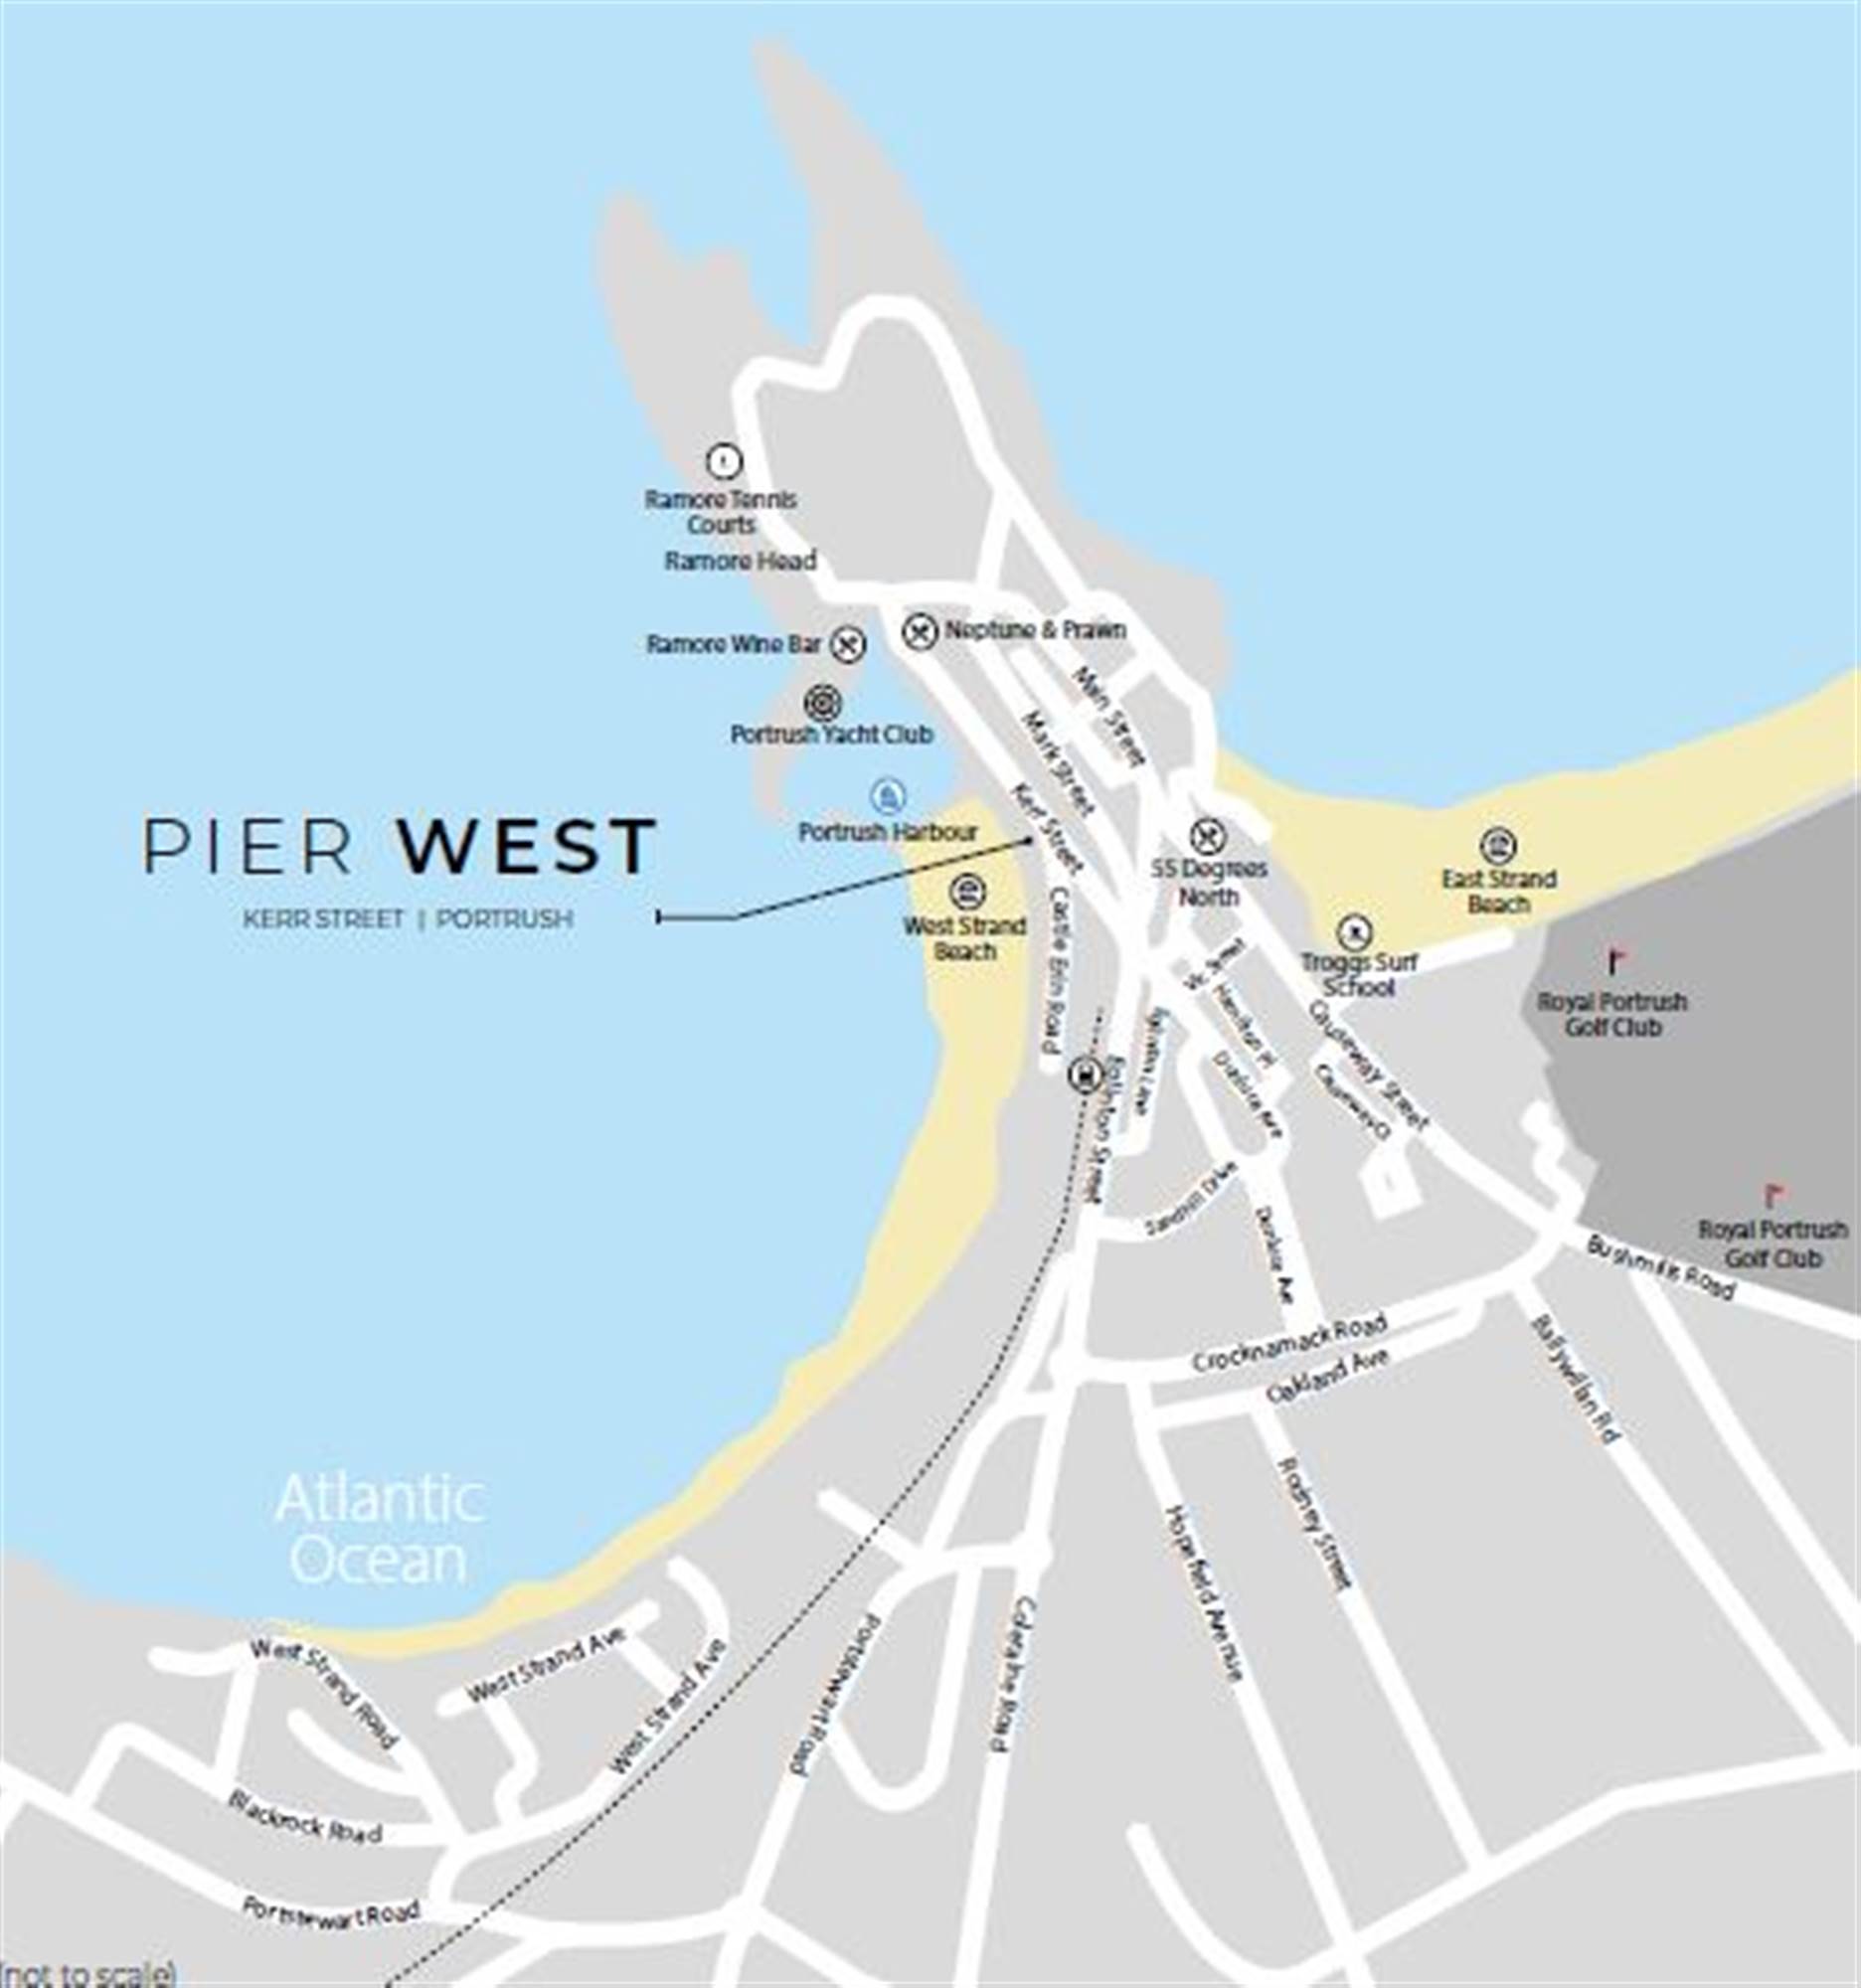 8 Pier West